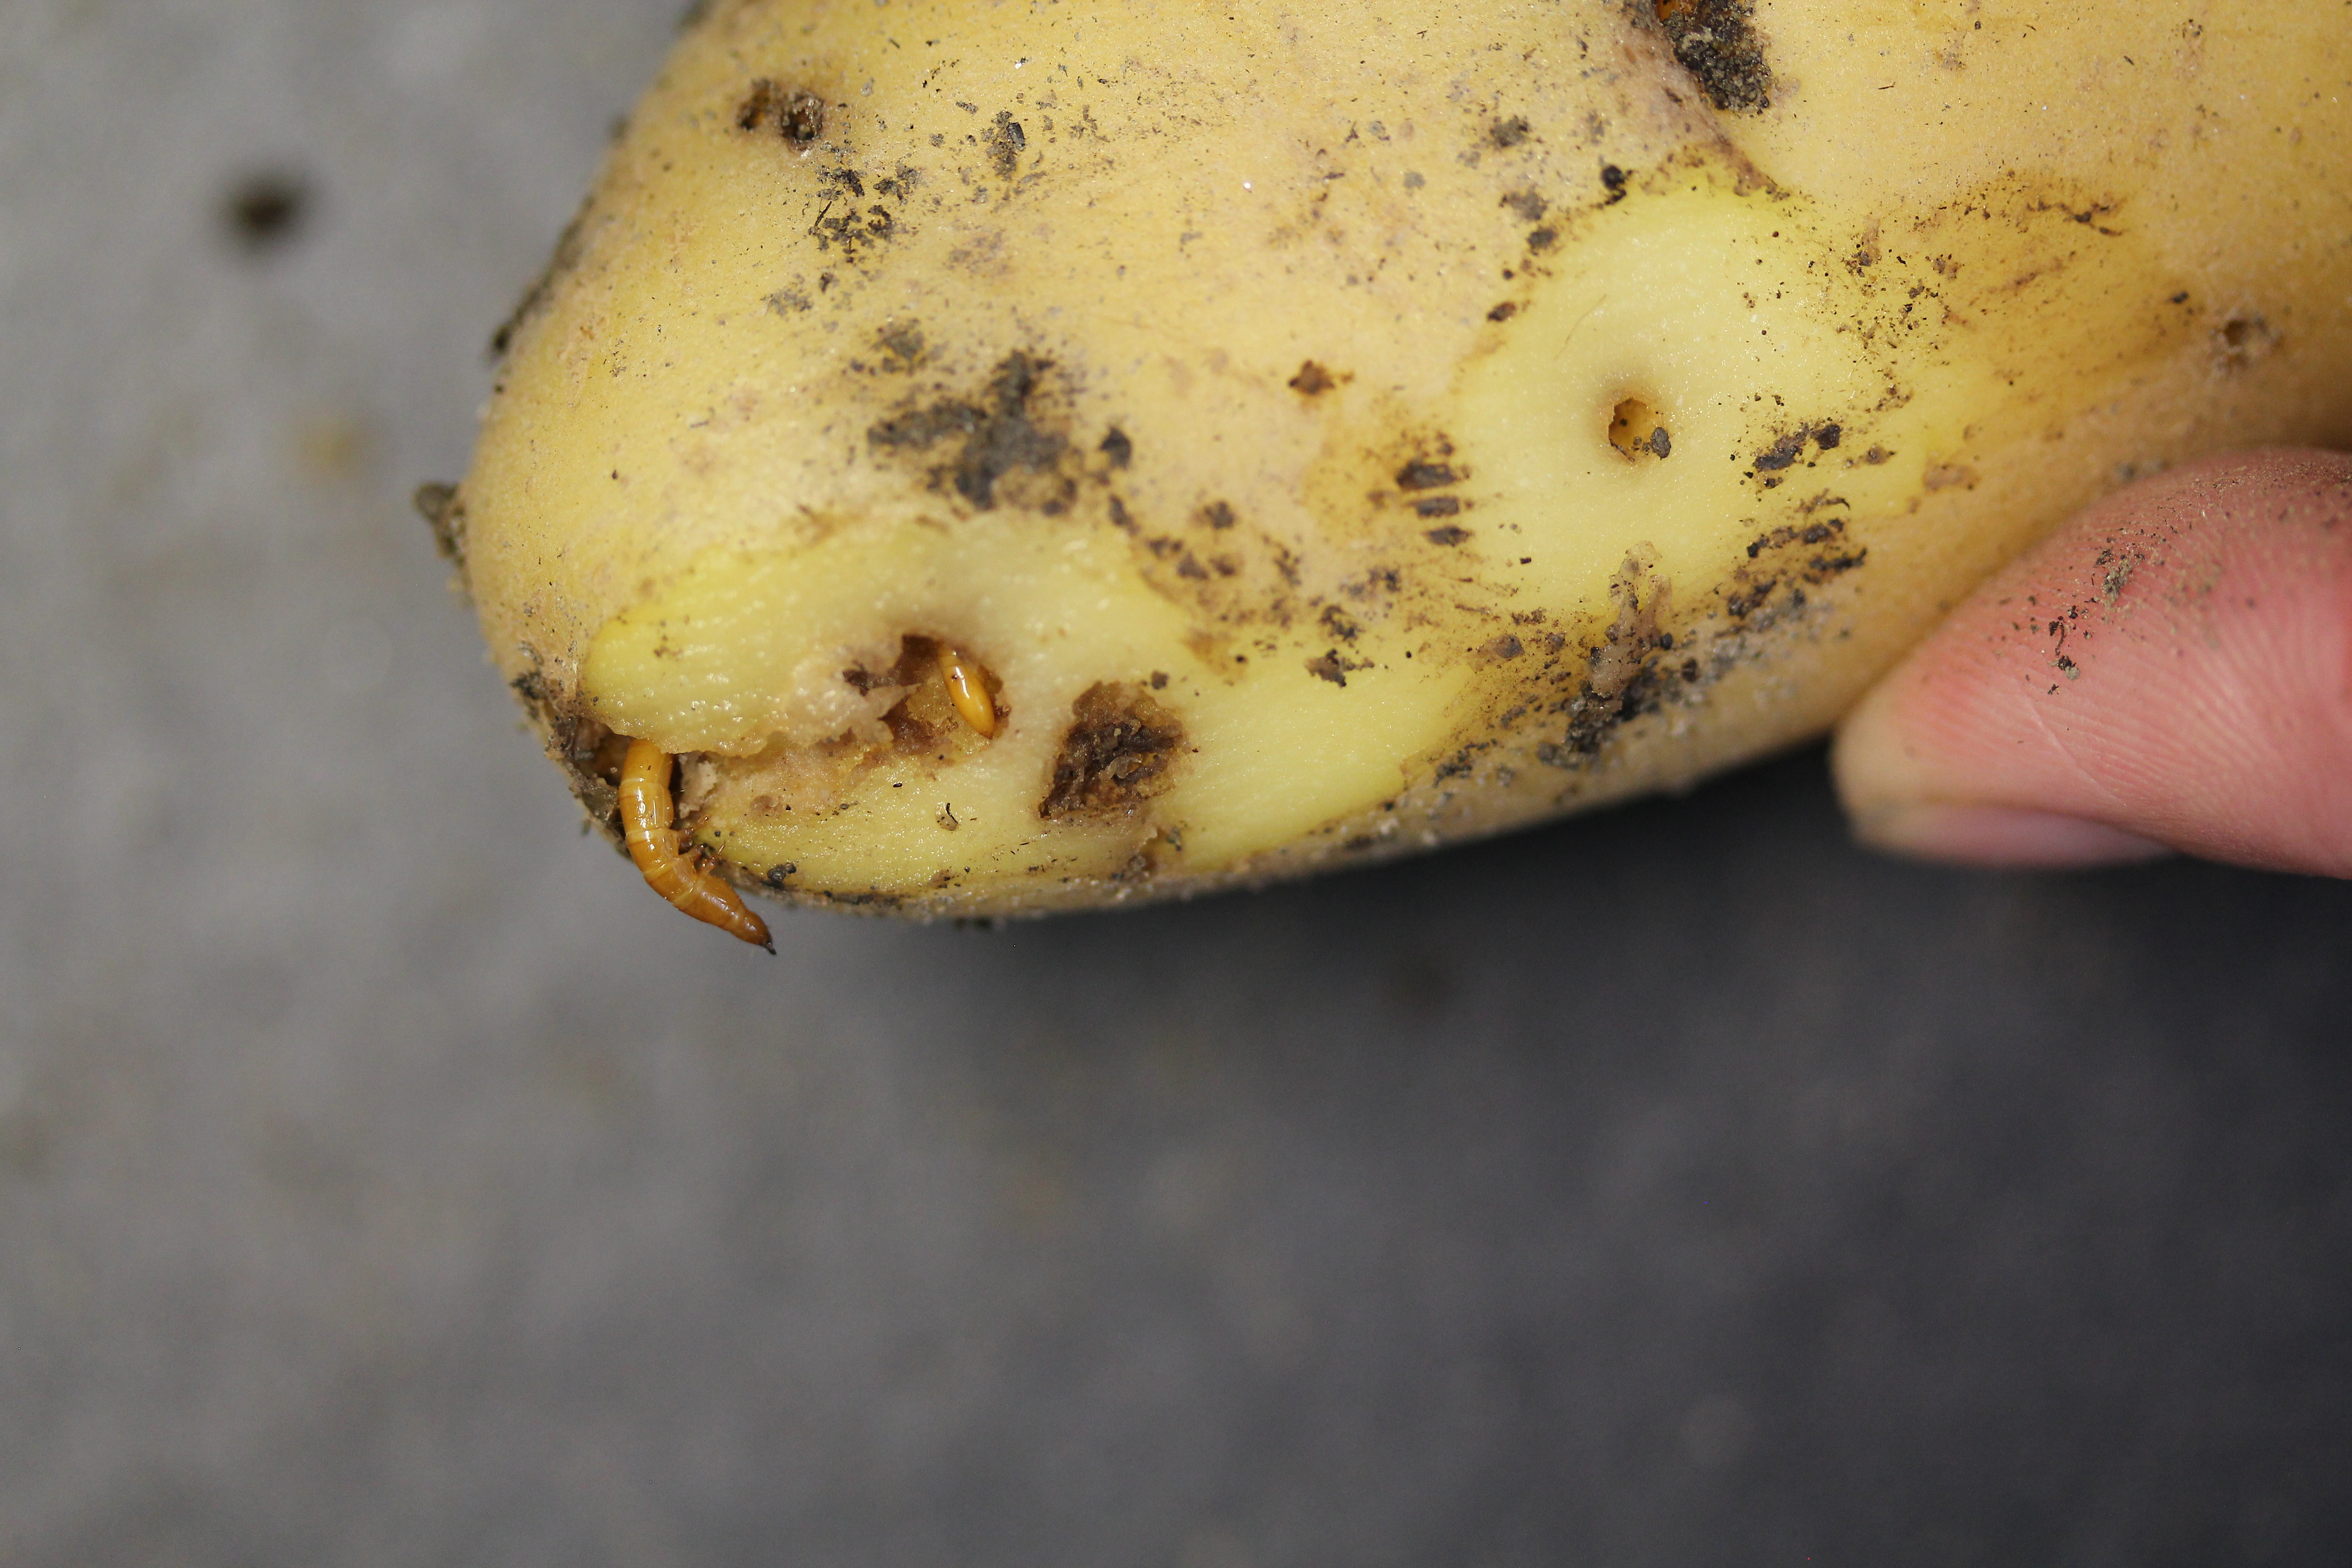 Kartoffel mit typischem Drahtwurmschaden